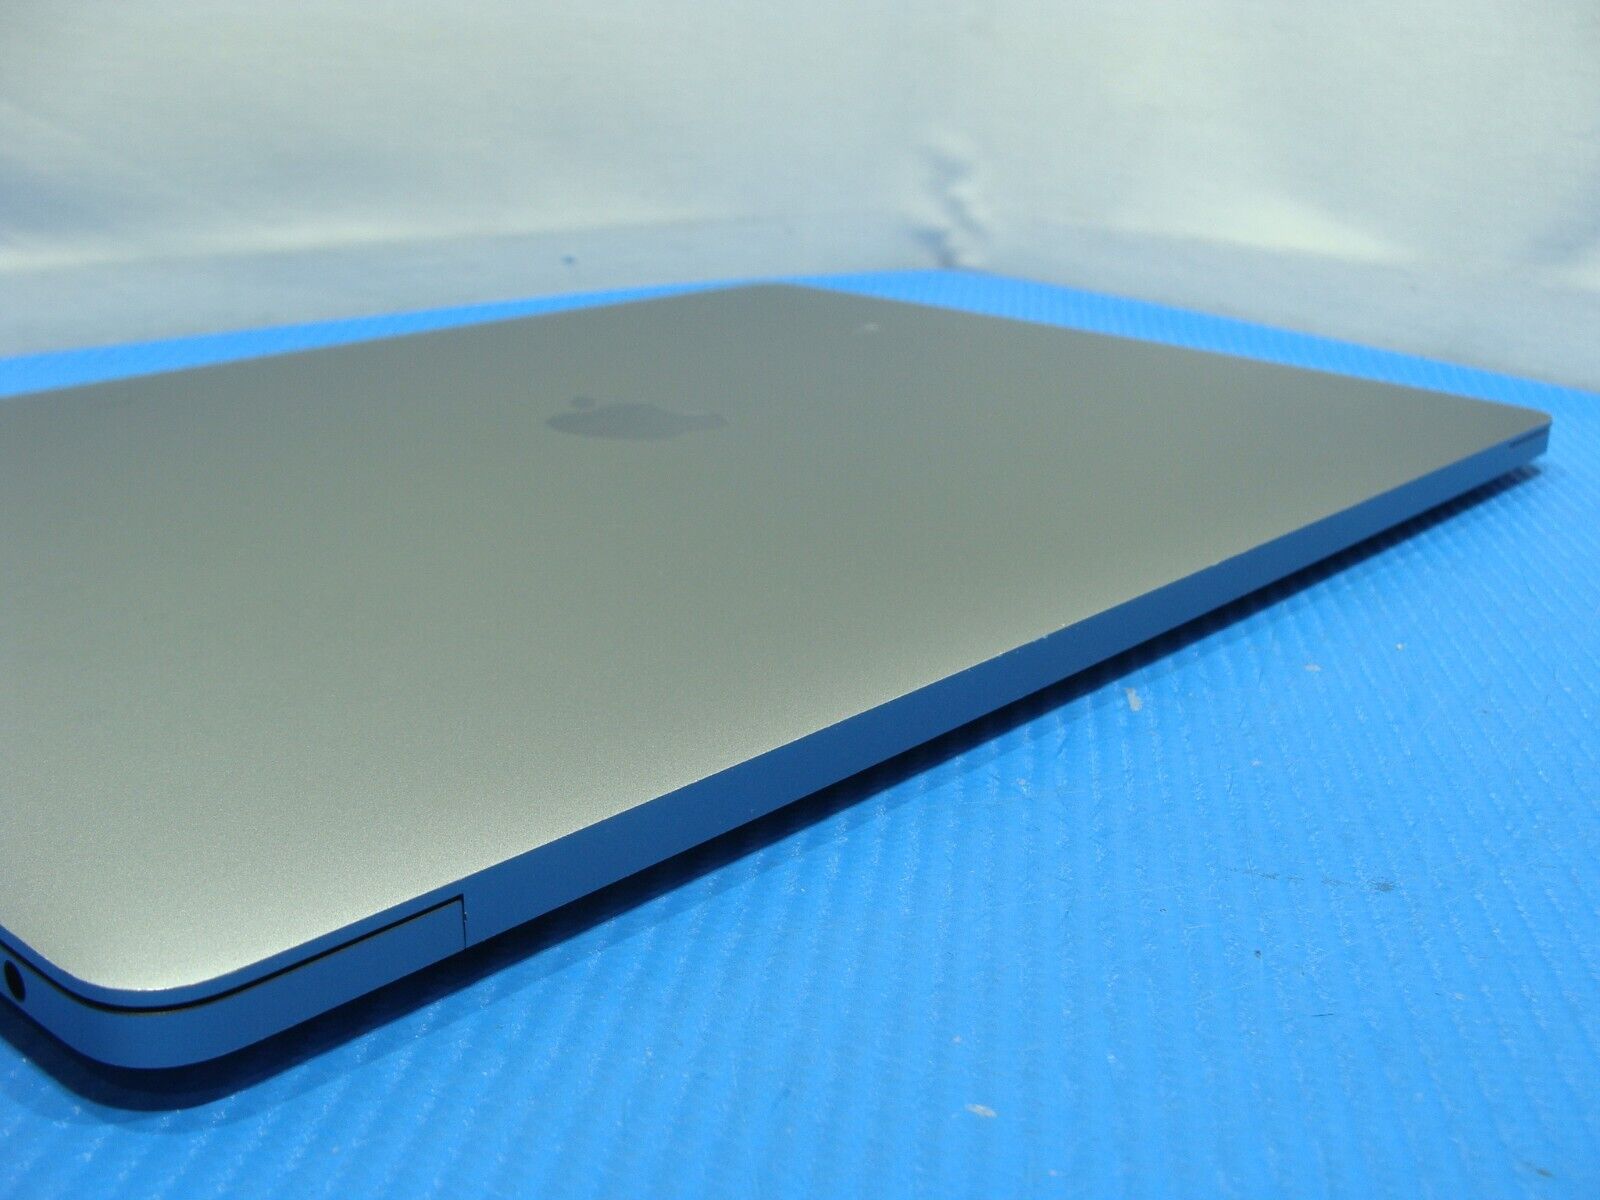 Apple MacBook Pro A1990 (2019) 15